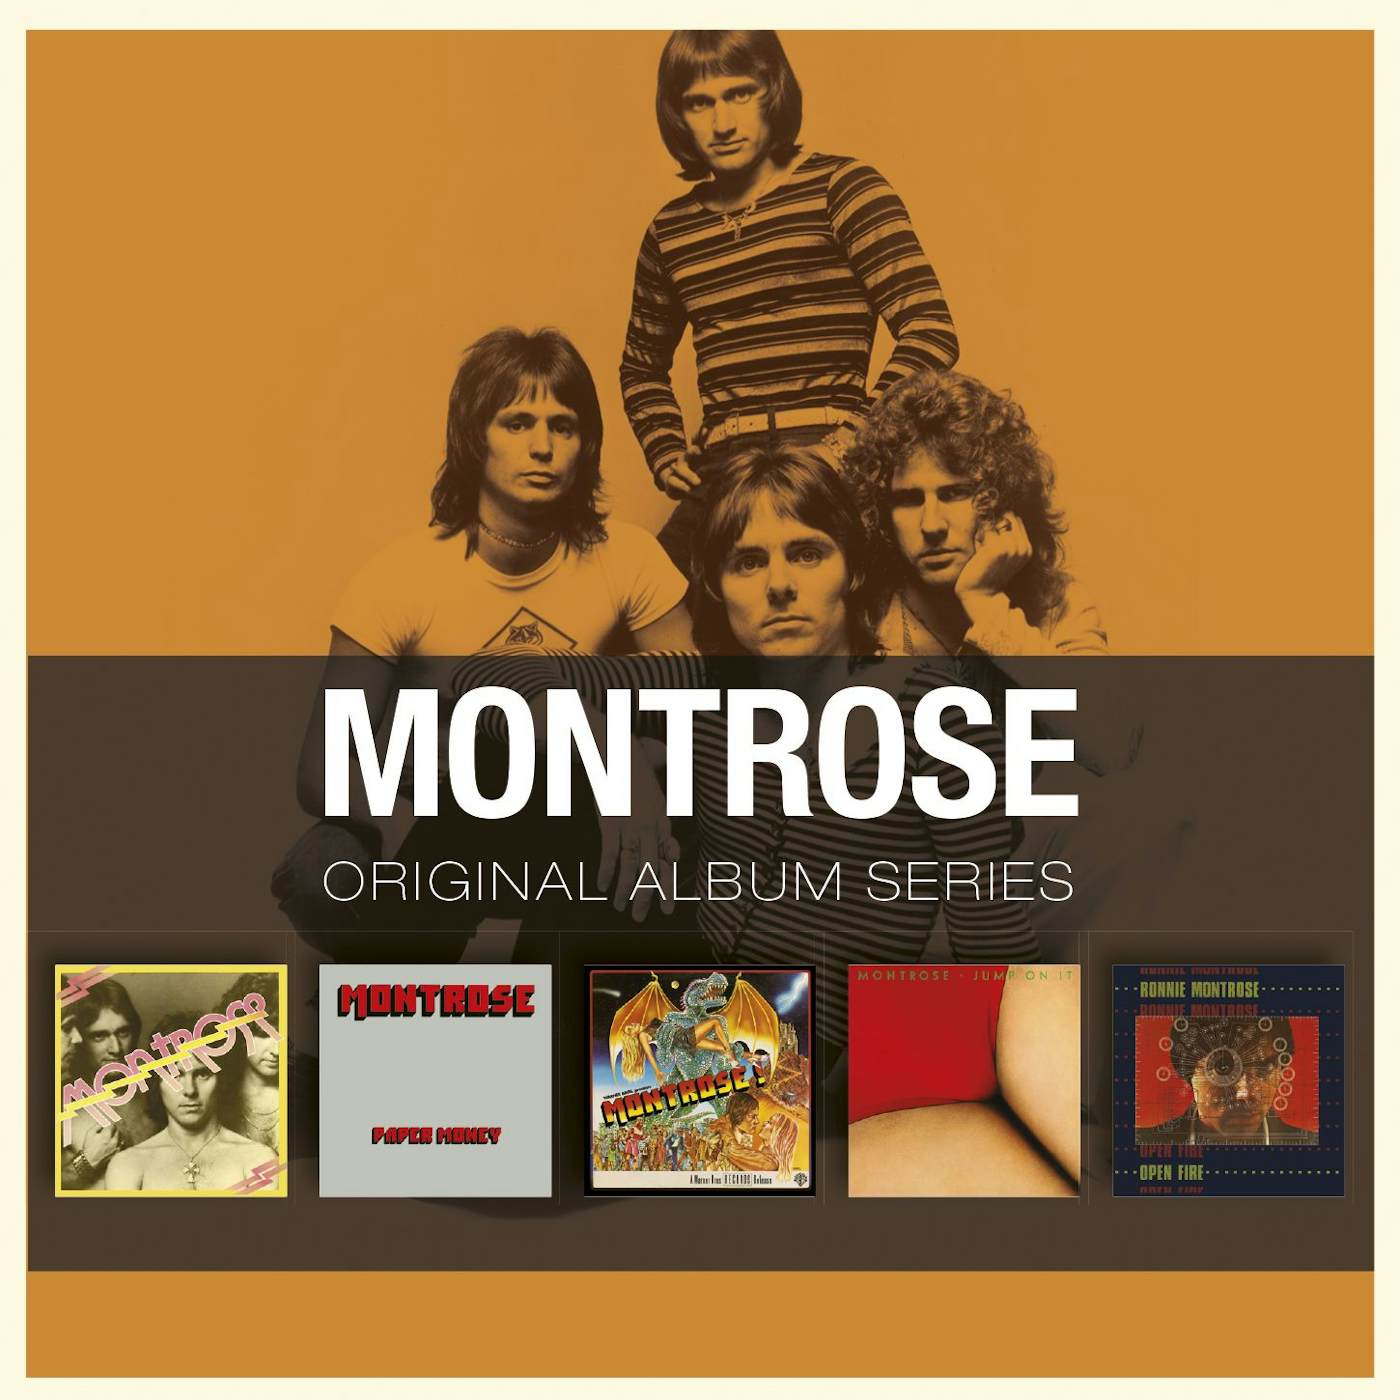 Montrose ORIGINAL ALBUM SERIES CD